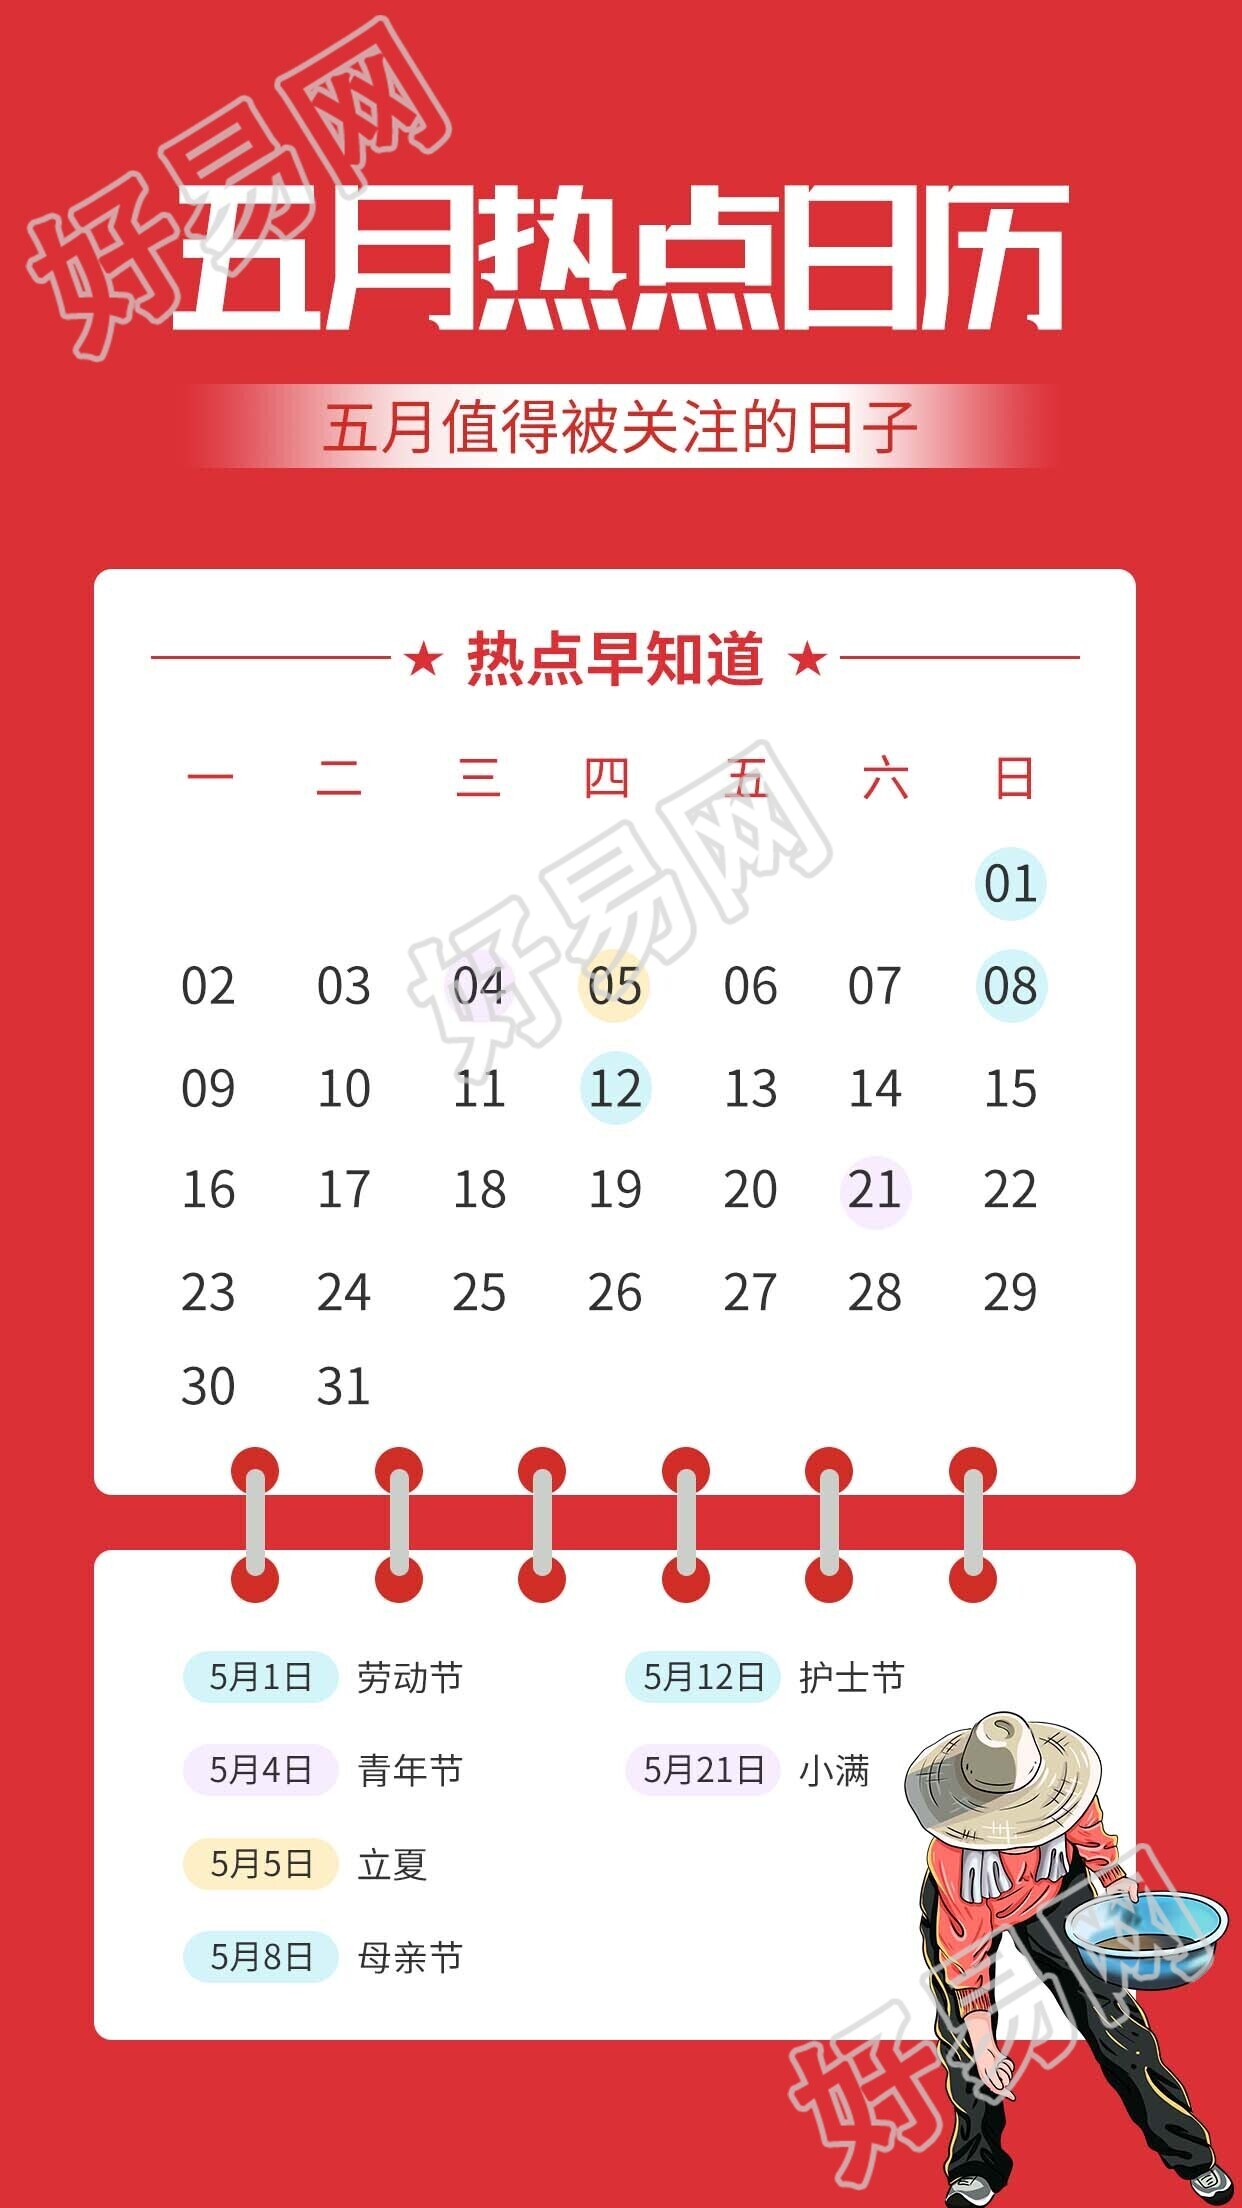 五月红色热点日历劳动节图片手机海报